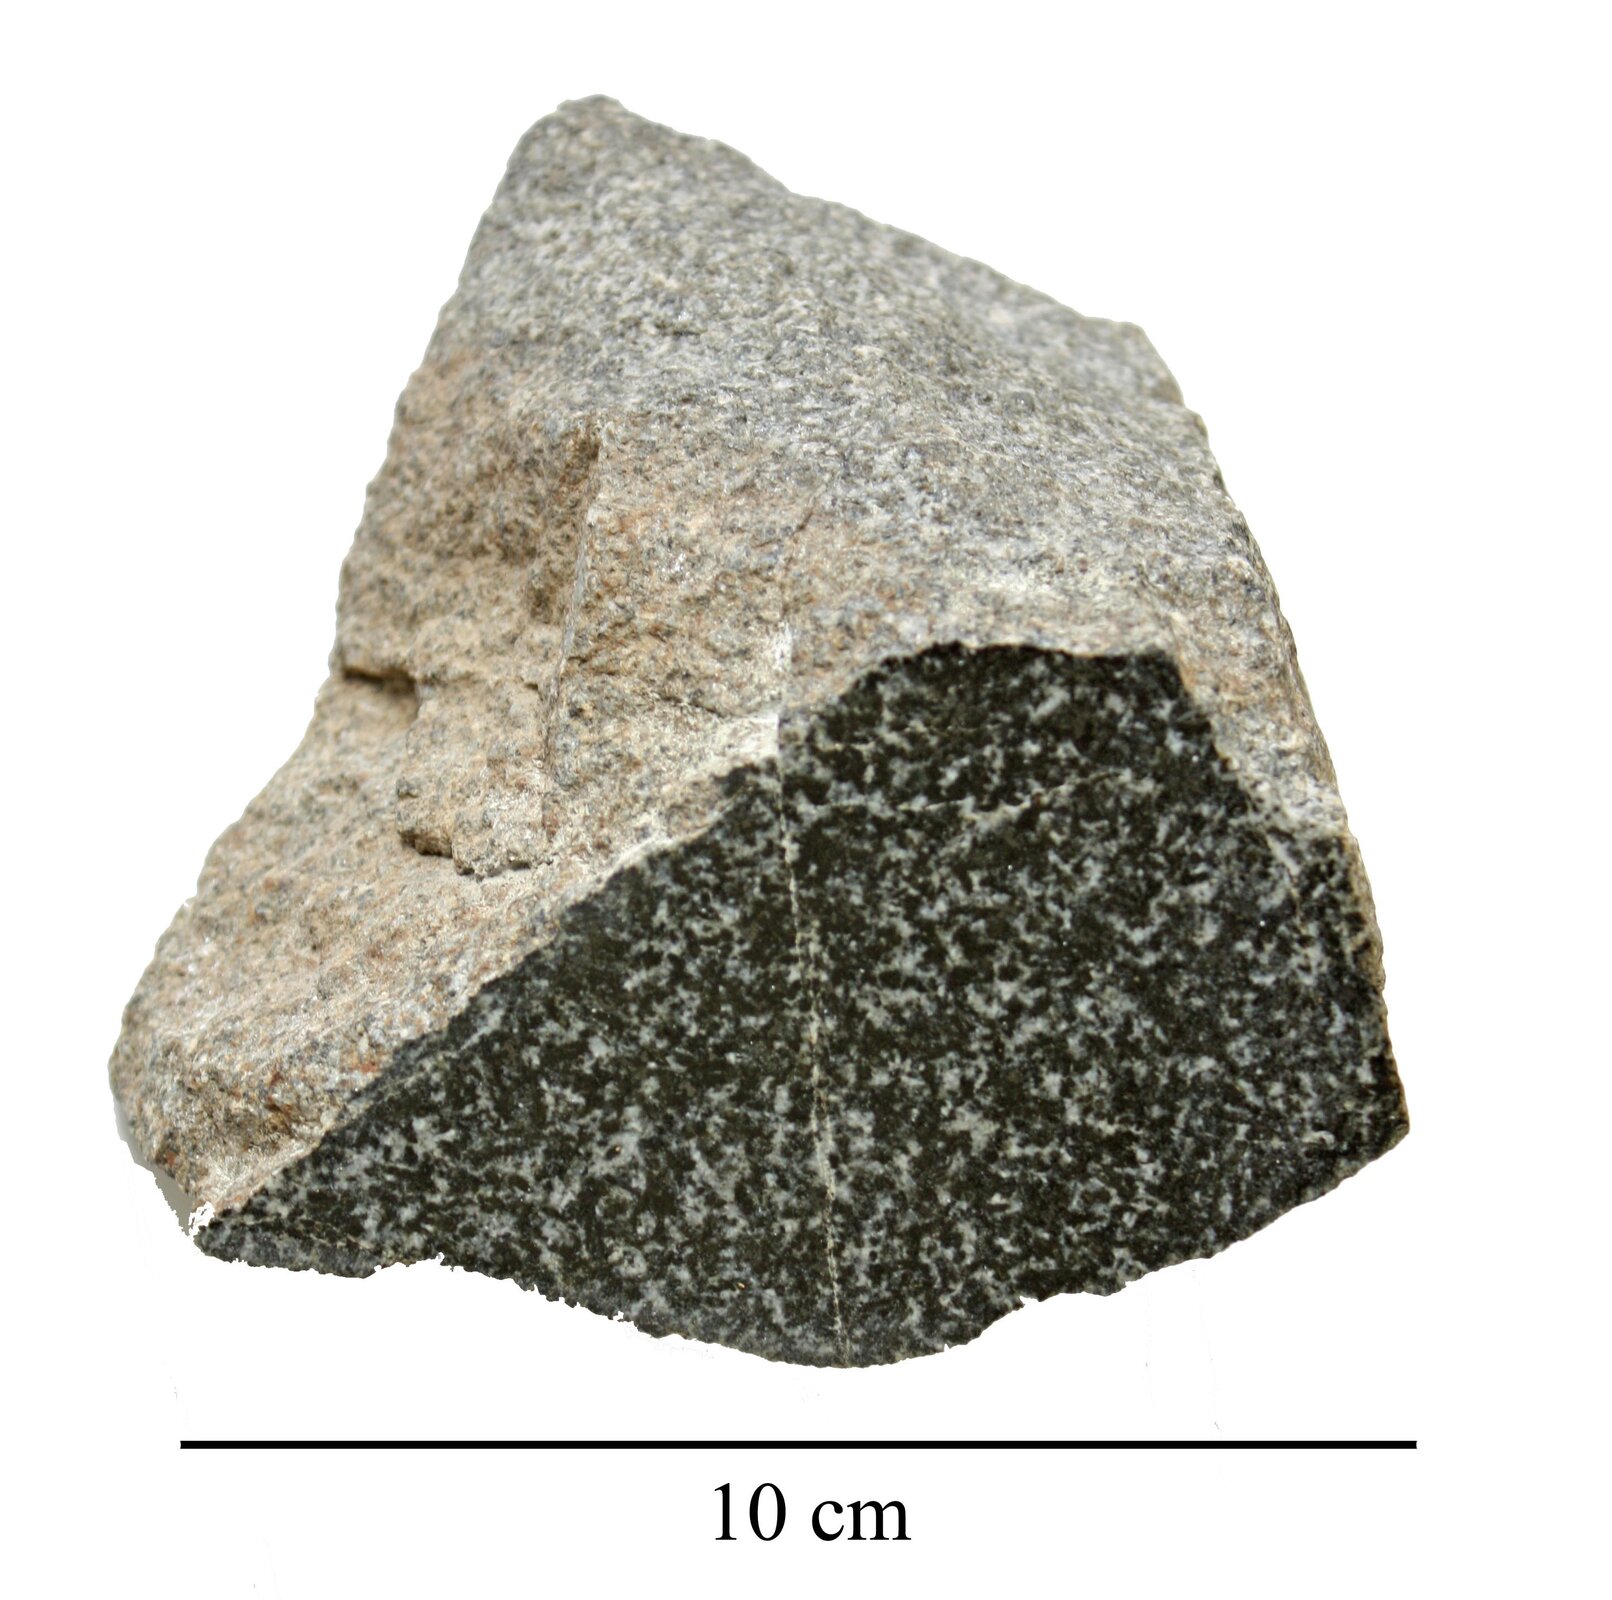 Zdjęcie przedstawia diabaz. Ma on kształt zbliżony do trójkąta. Jego powierzchnia jest chropowata. Górna część ma barwę jasną natomiast dolna czarną z białymi domieszkami. Długość skały wynosi 10 centymetrów.